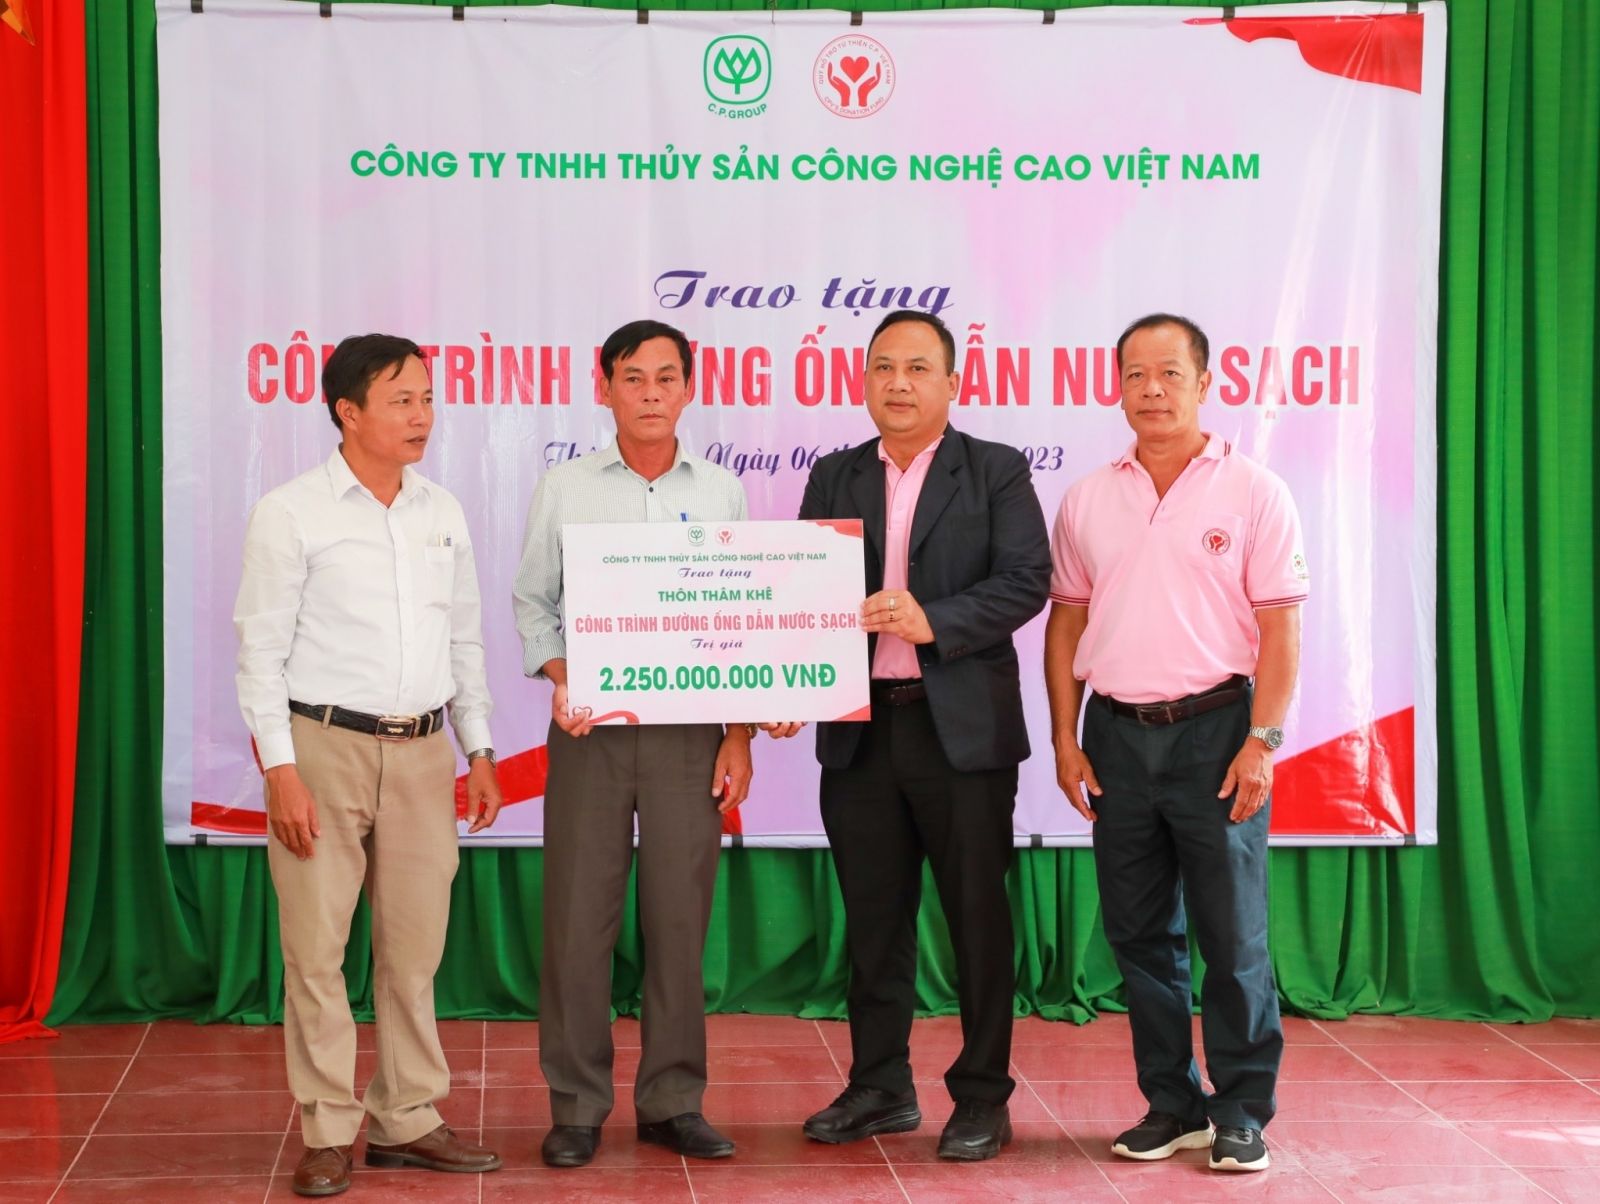 Ban lãnh đạo Công ty TNHH Thủy sản Công nghệ cao Việt Nam trao tặng bảng tượng trưng công trình đường ống dẫn nước sạch cho địa phương.